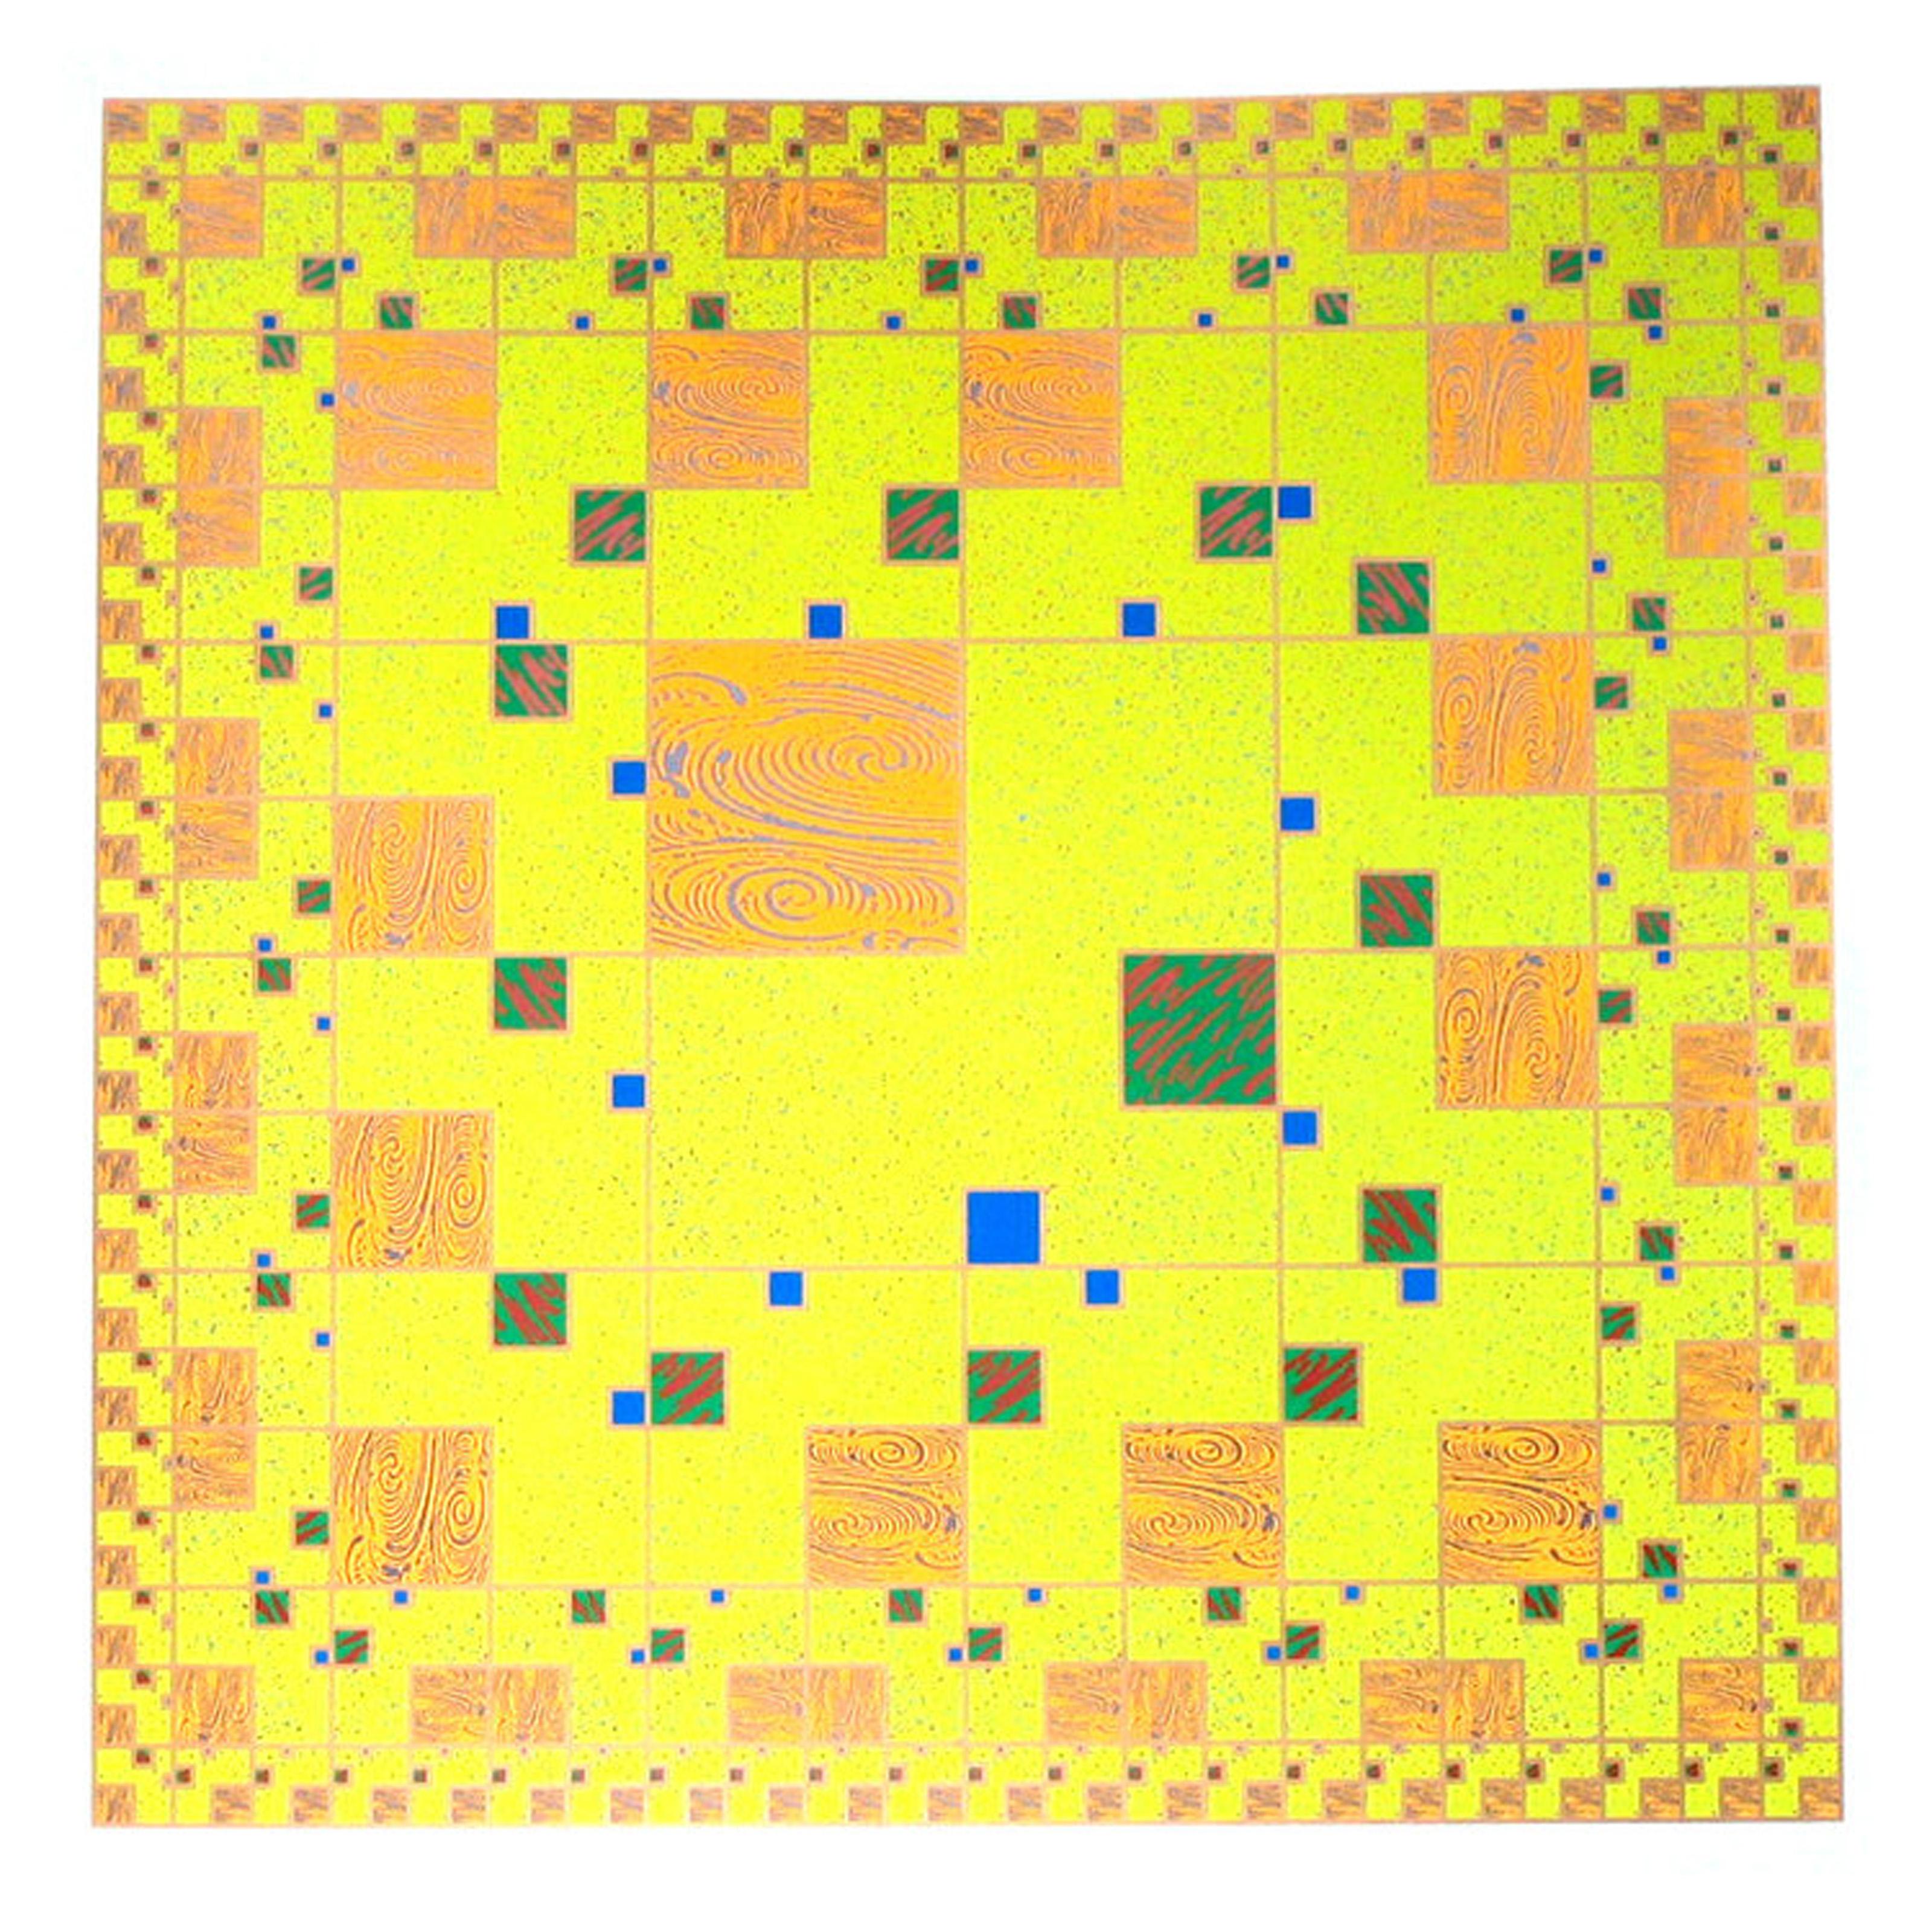 Ein leuchtend gelber, geometrisch abstrakter Druck des japanischen Künstlers Takaaki Matsumoto. 

Gelb
Takaaki Matsumoto, Japaner (1954)
Datum: 1991
Siebdruck
Auflage von 89
Größe: 24 x 24 Zoll (60,96 x 60,96 cm)